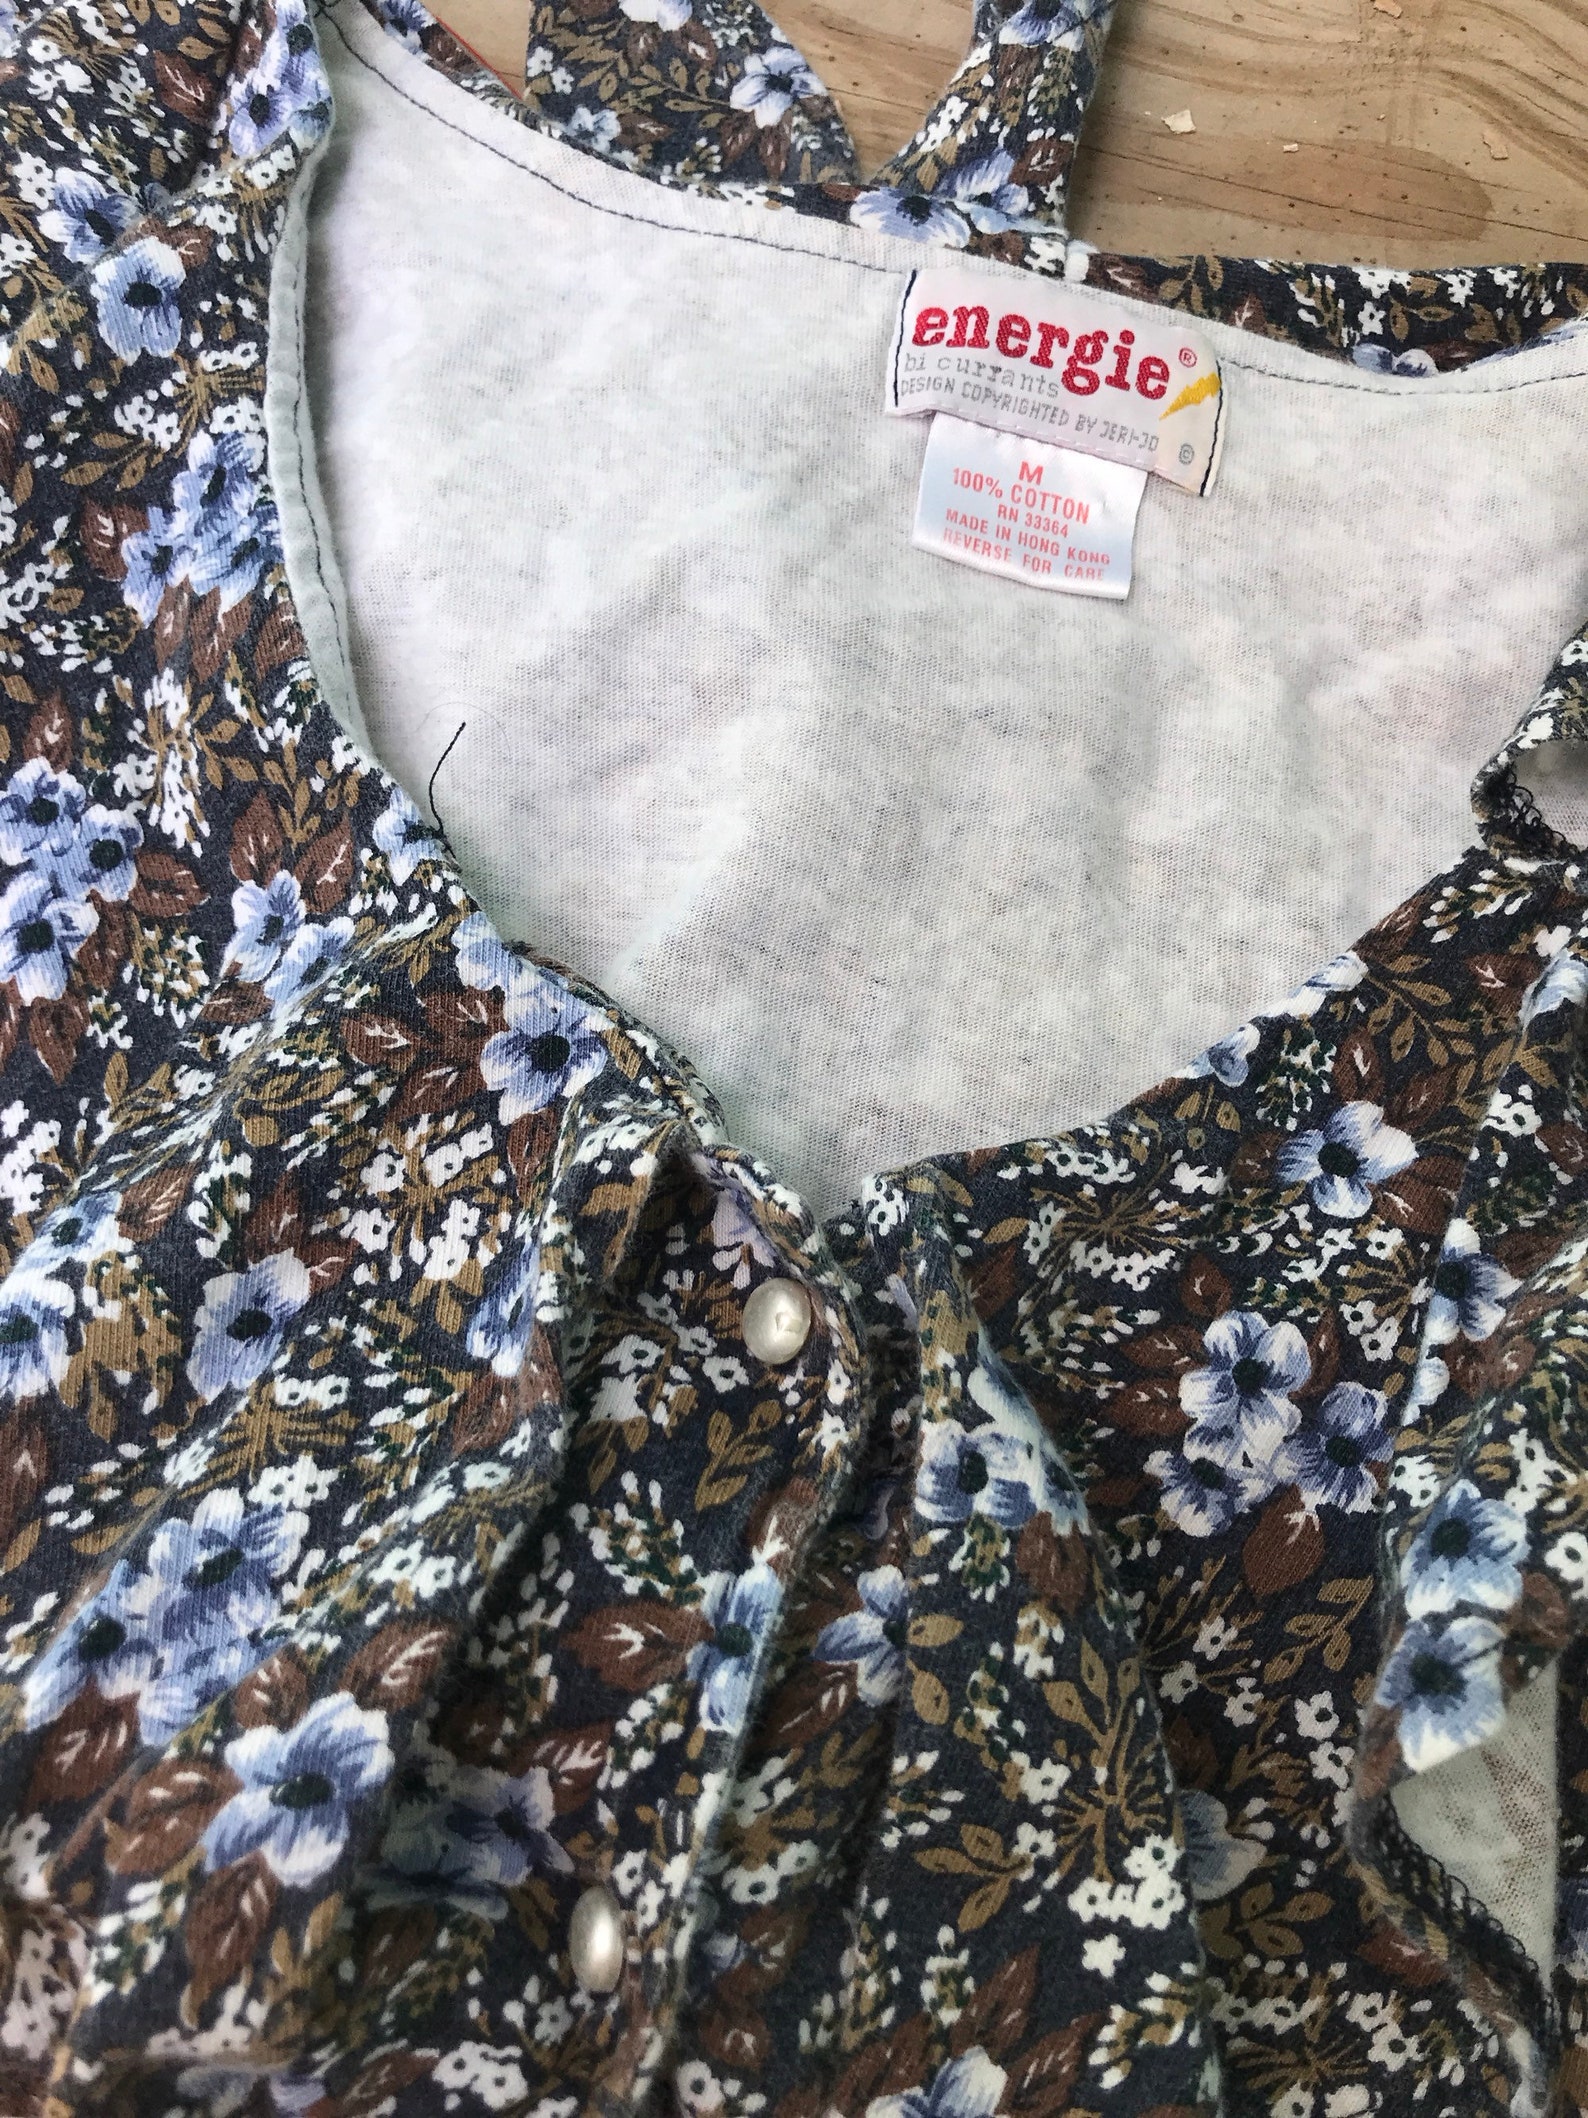 90s medium foral crop top waist tie button flower blue brown | Etsy